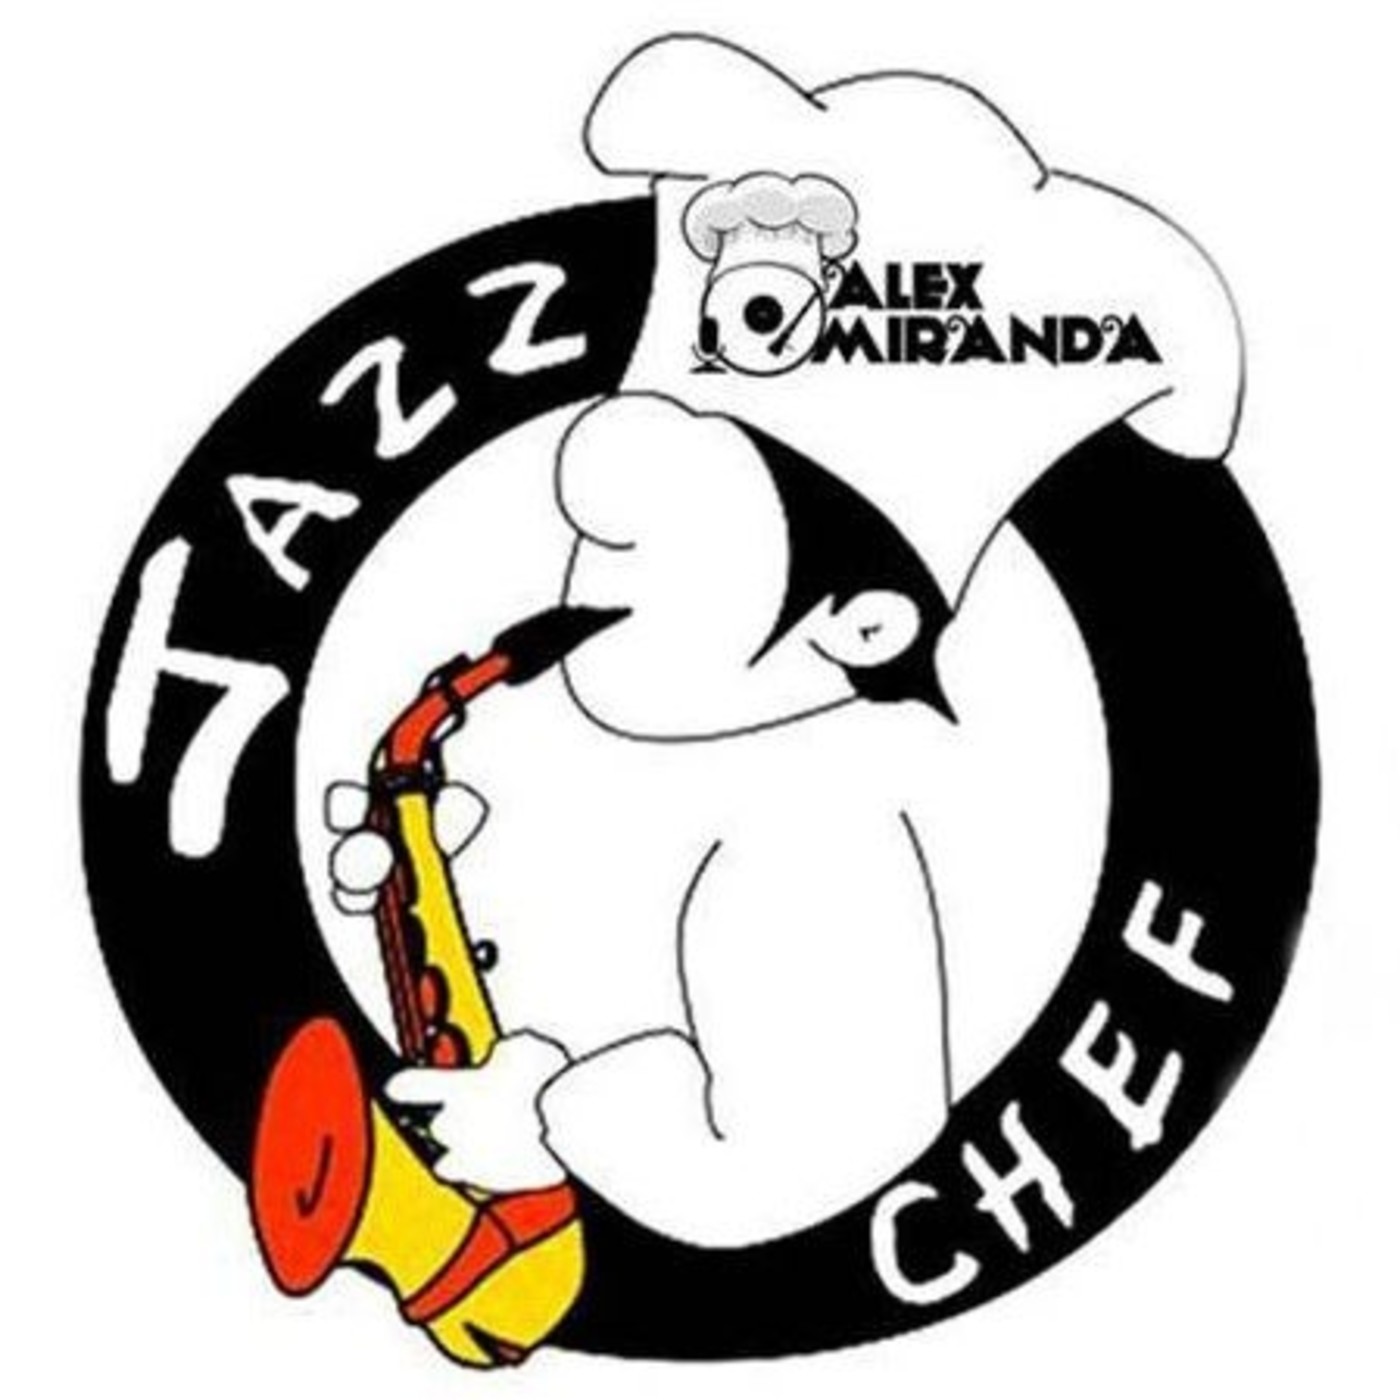 2017/04/29 - A la sazón del Jazz